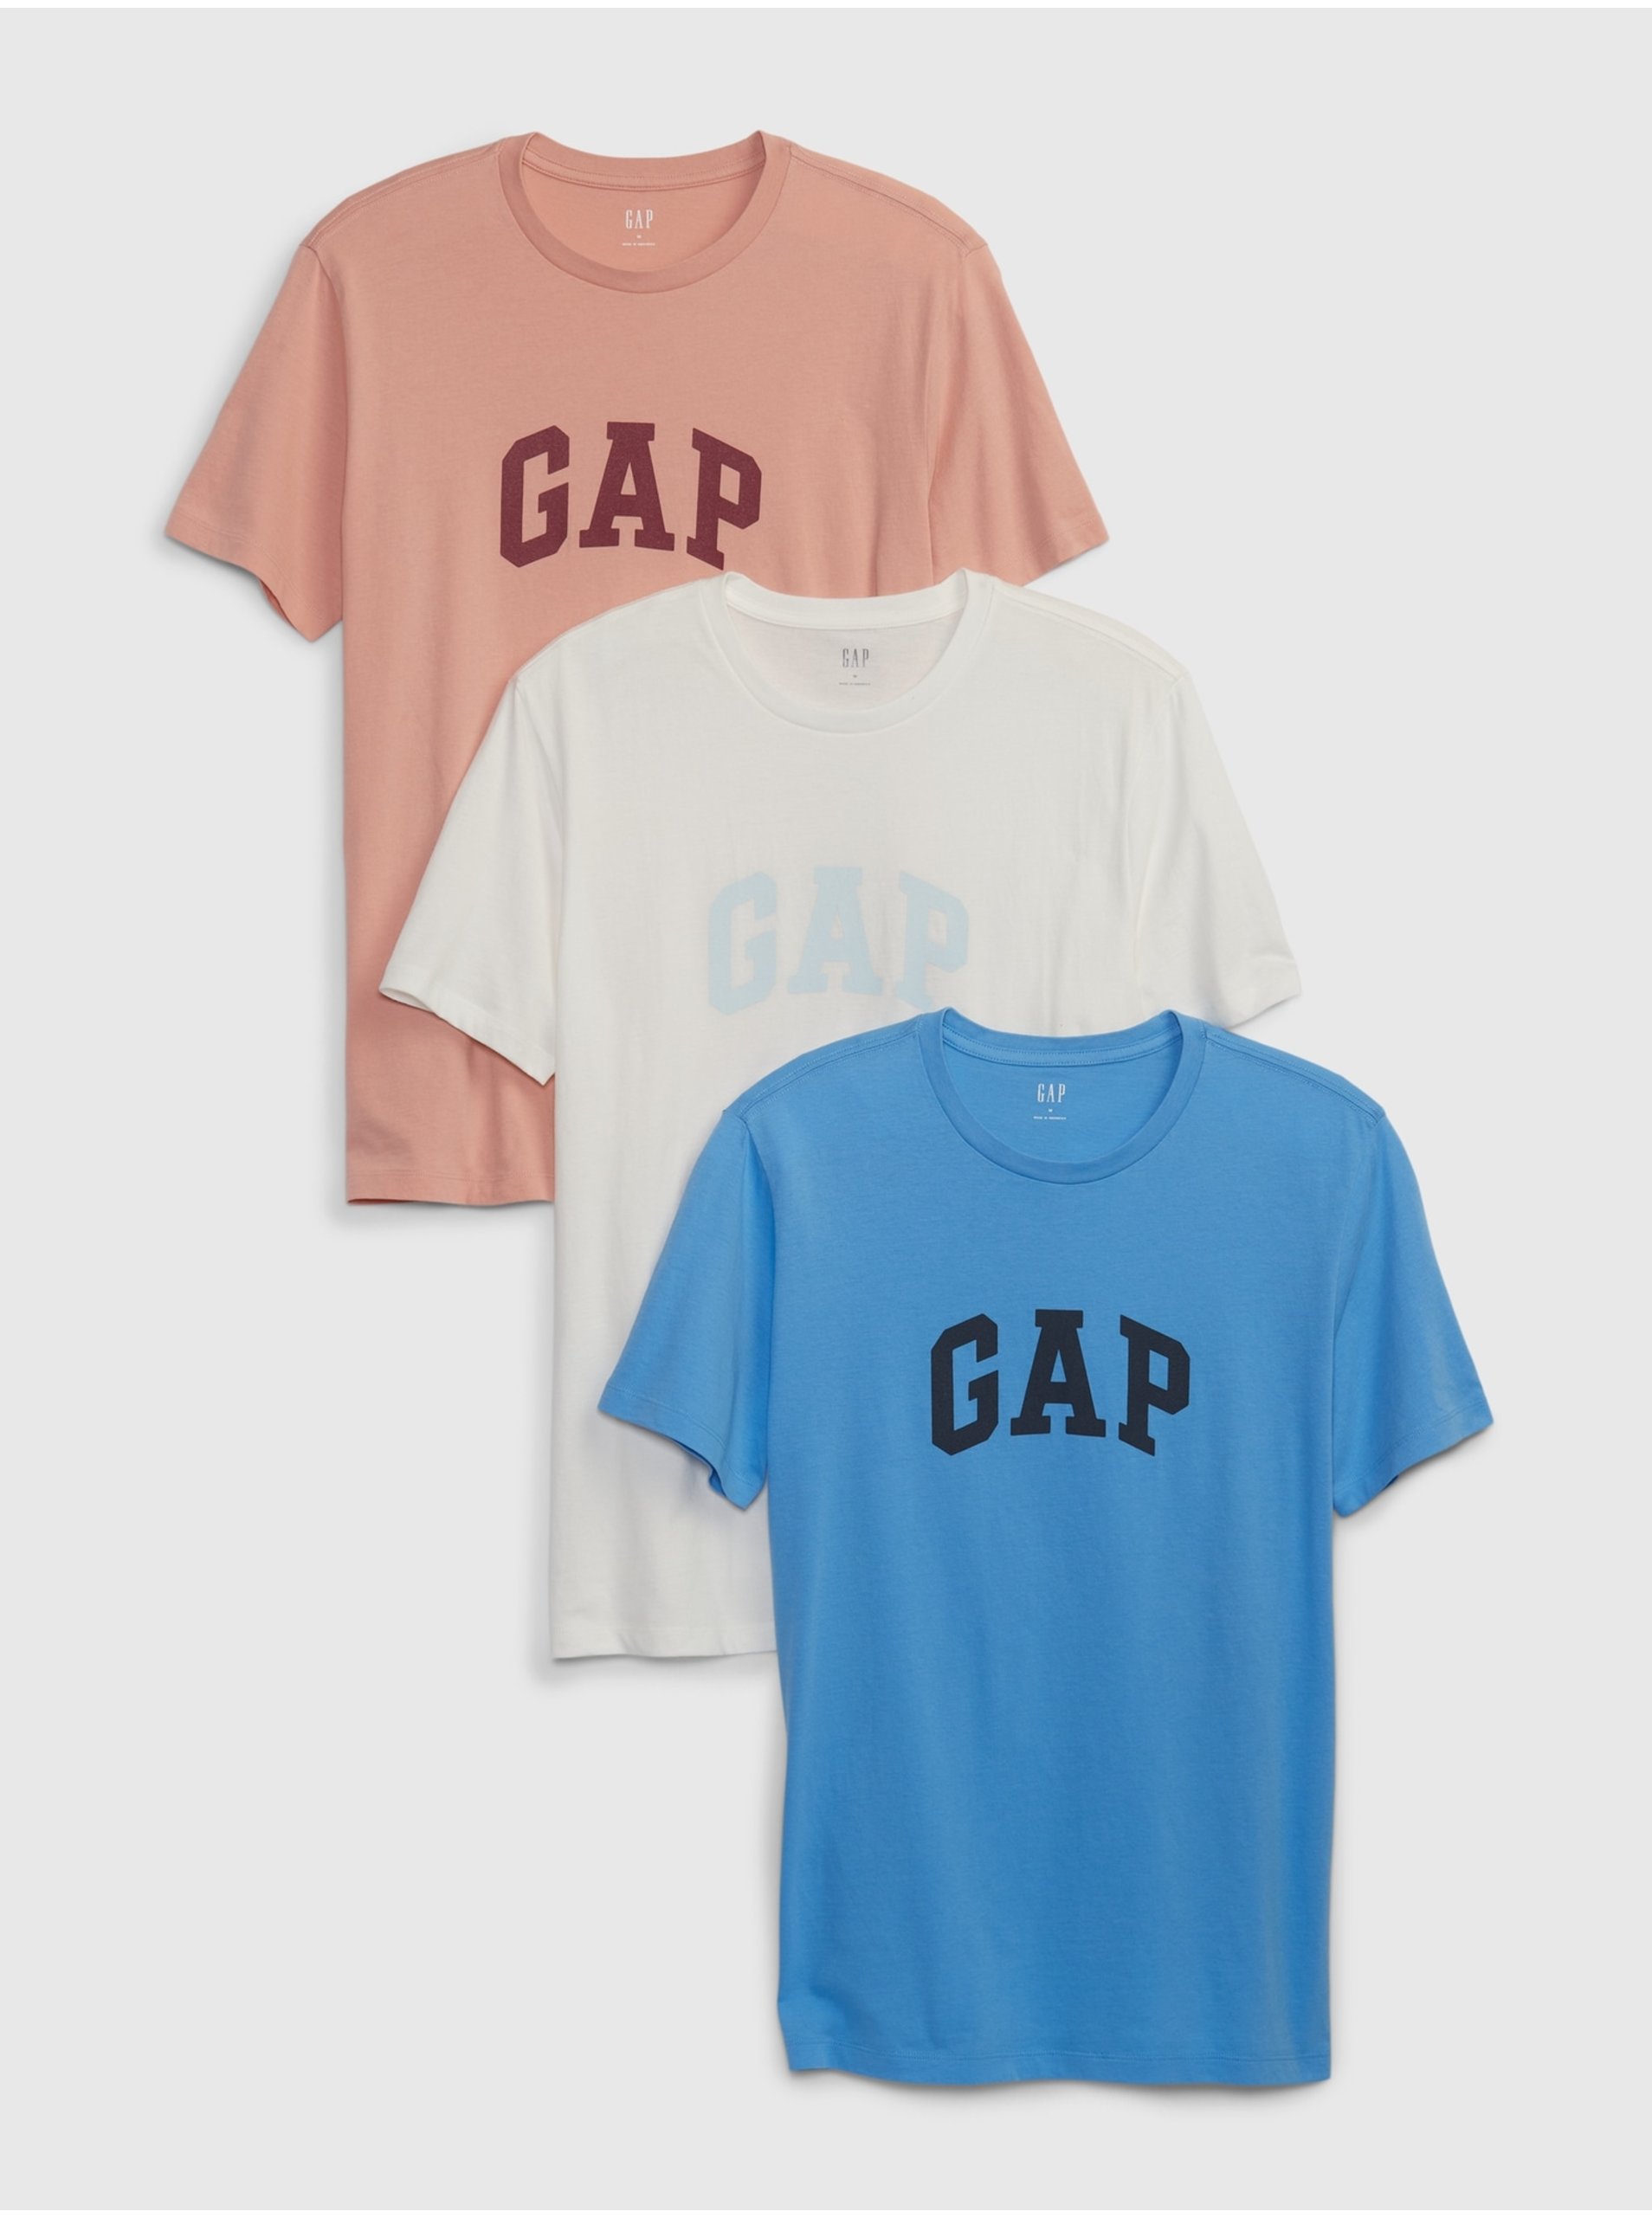 Levně Barevné pánské tričko s logem GAP, 3ks